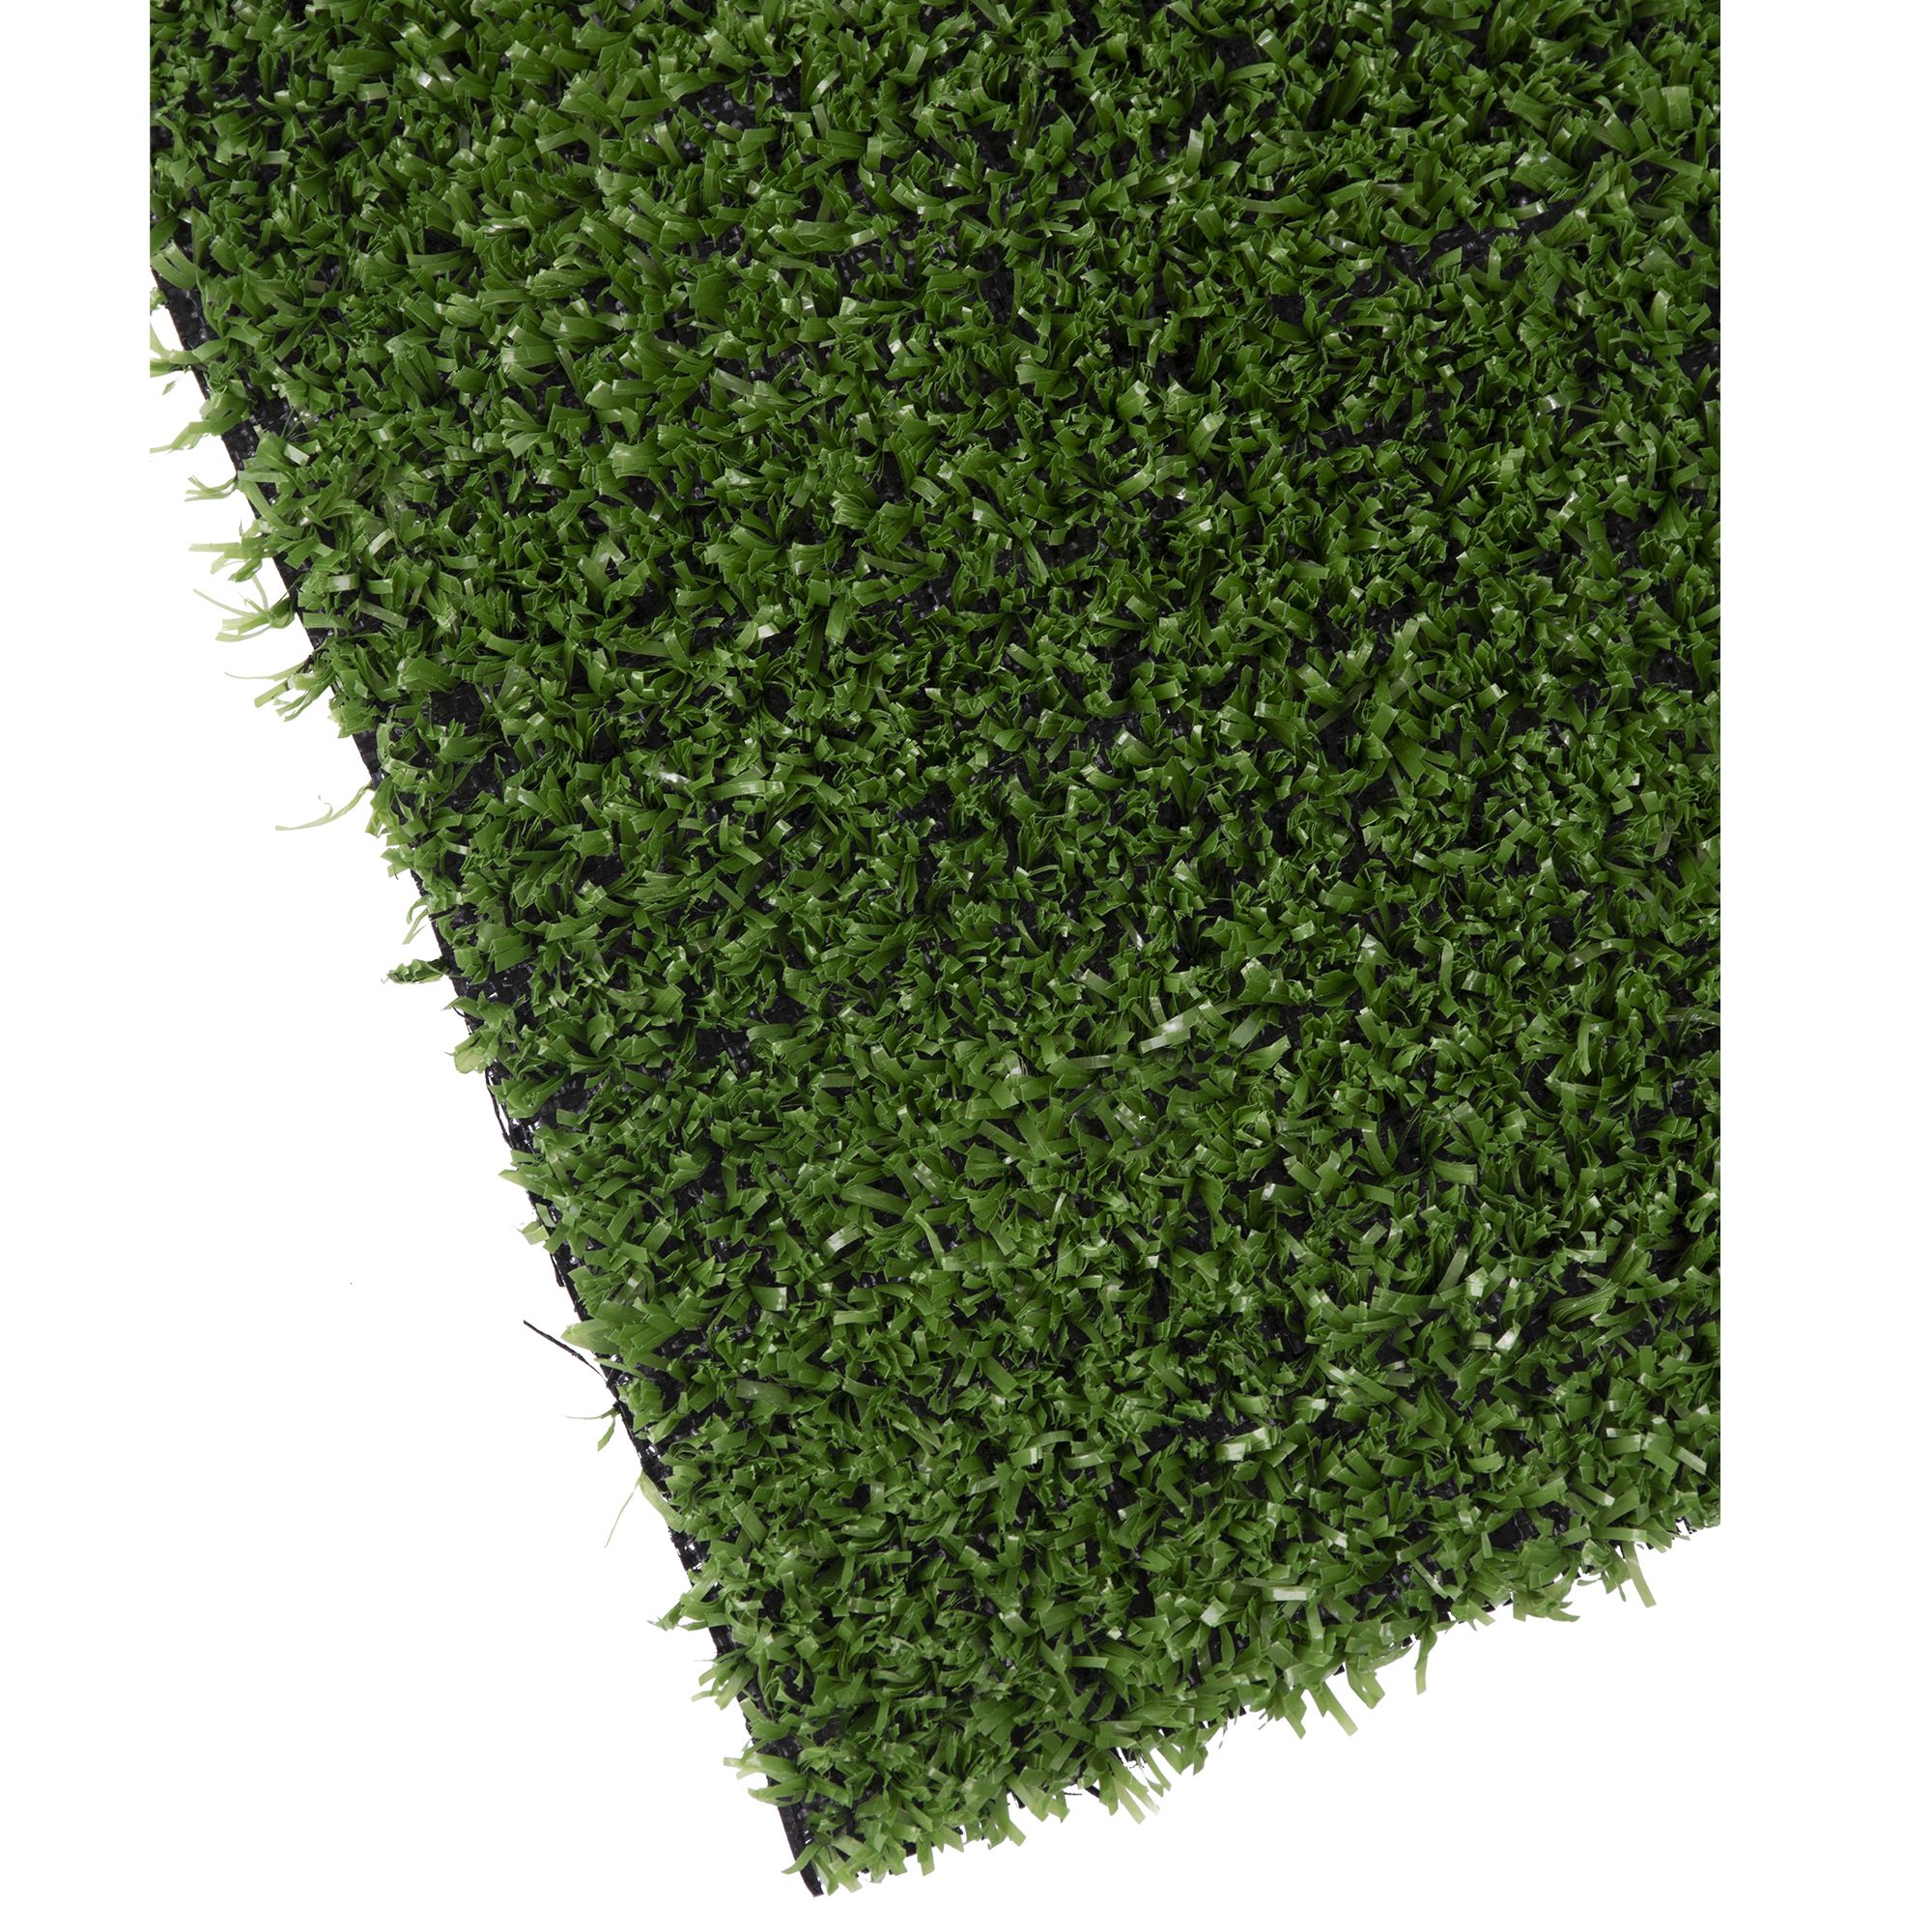 Umělý trávník, 7mm, 100cm x 25m, zelený, STREND PRO 21.000000 Kg GIGA Sklad20 2171801 1